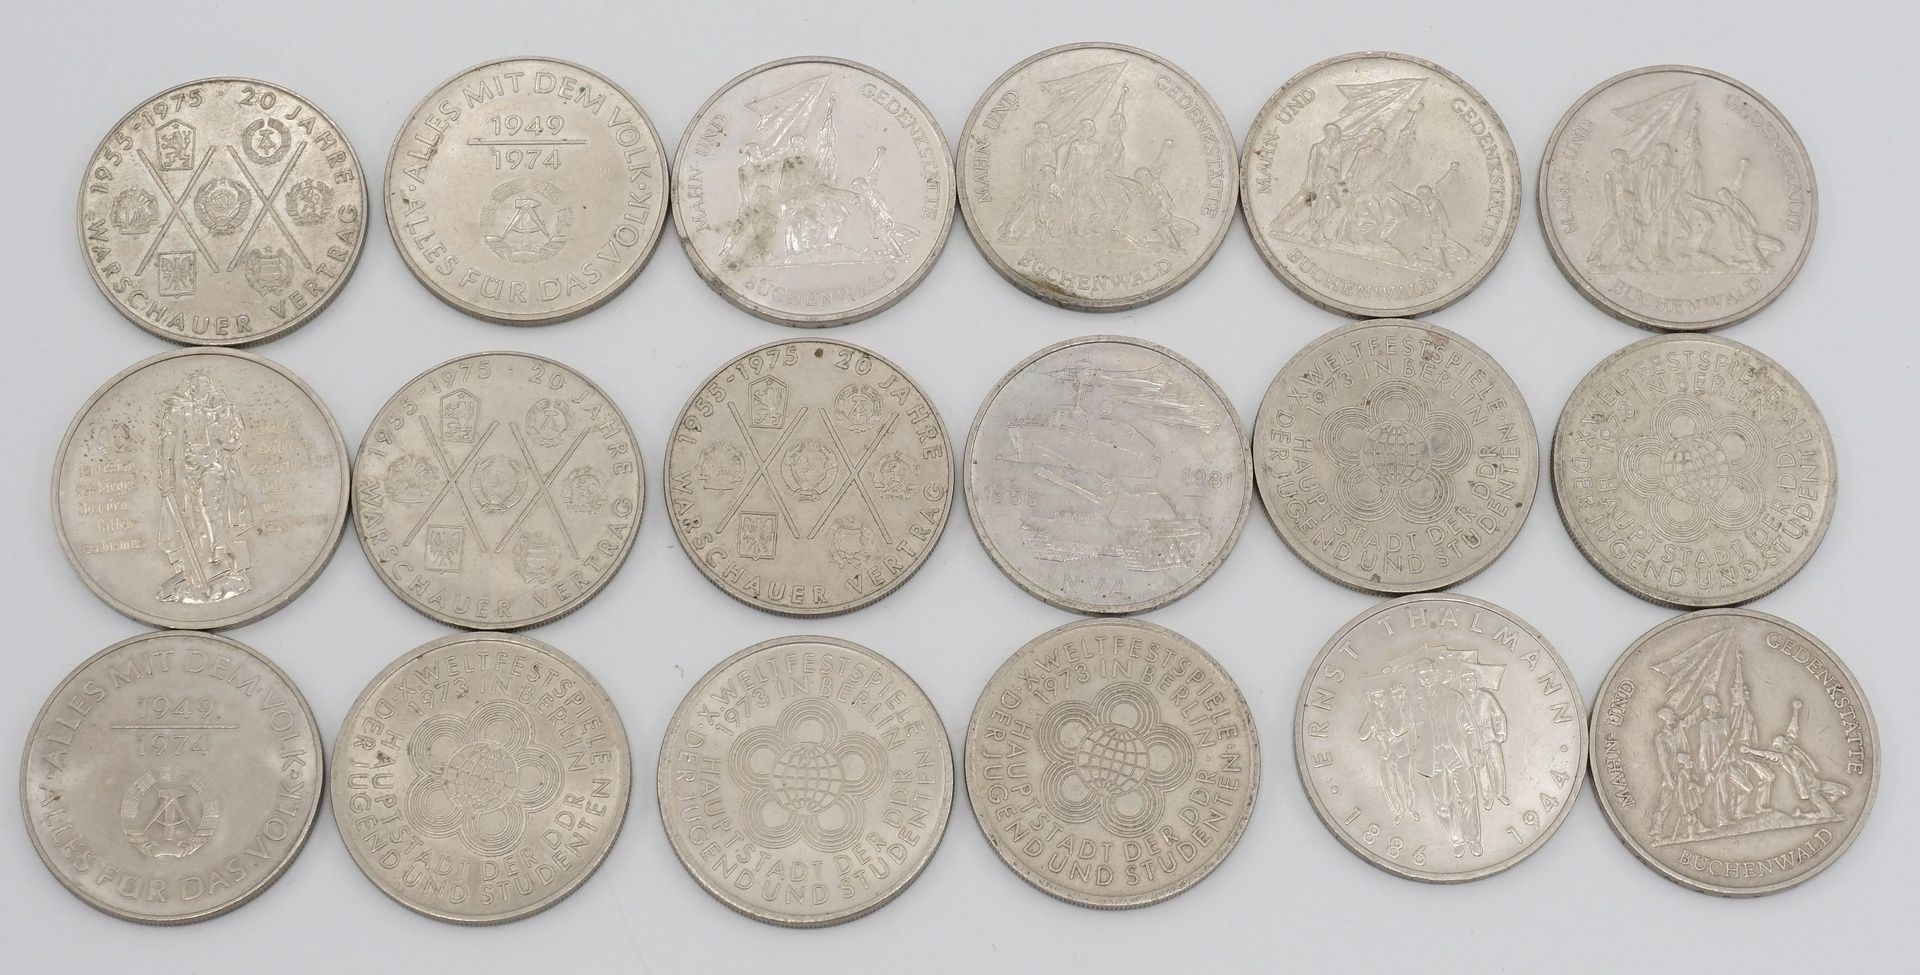 47 Umlaufmünzen, 10 und 20 DDR MarkKupfer / Nickel, 20 x 10 DDR Mark und 27 x 20 DDR Mark, Erhaltung - Image 5 of 5